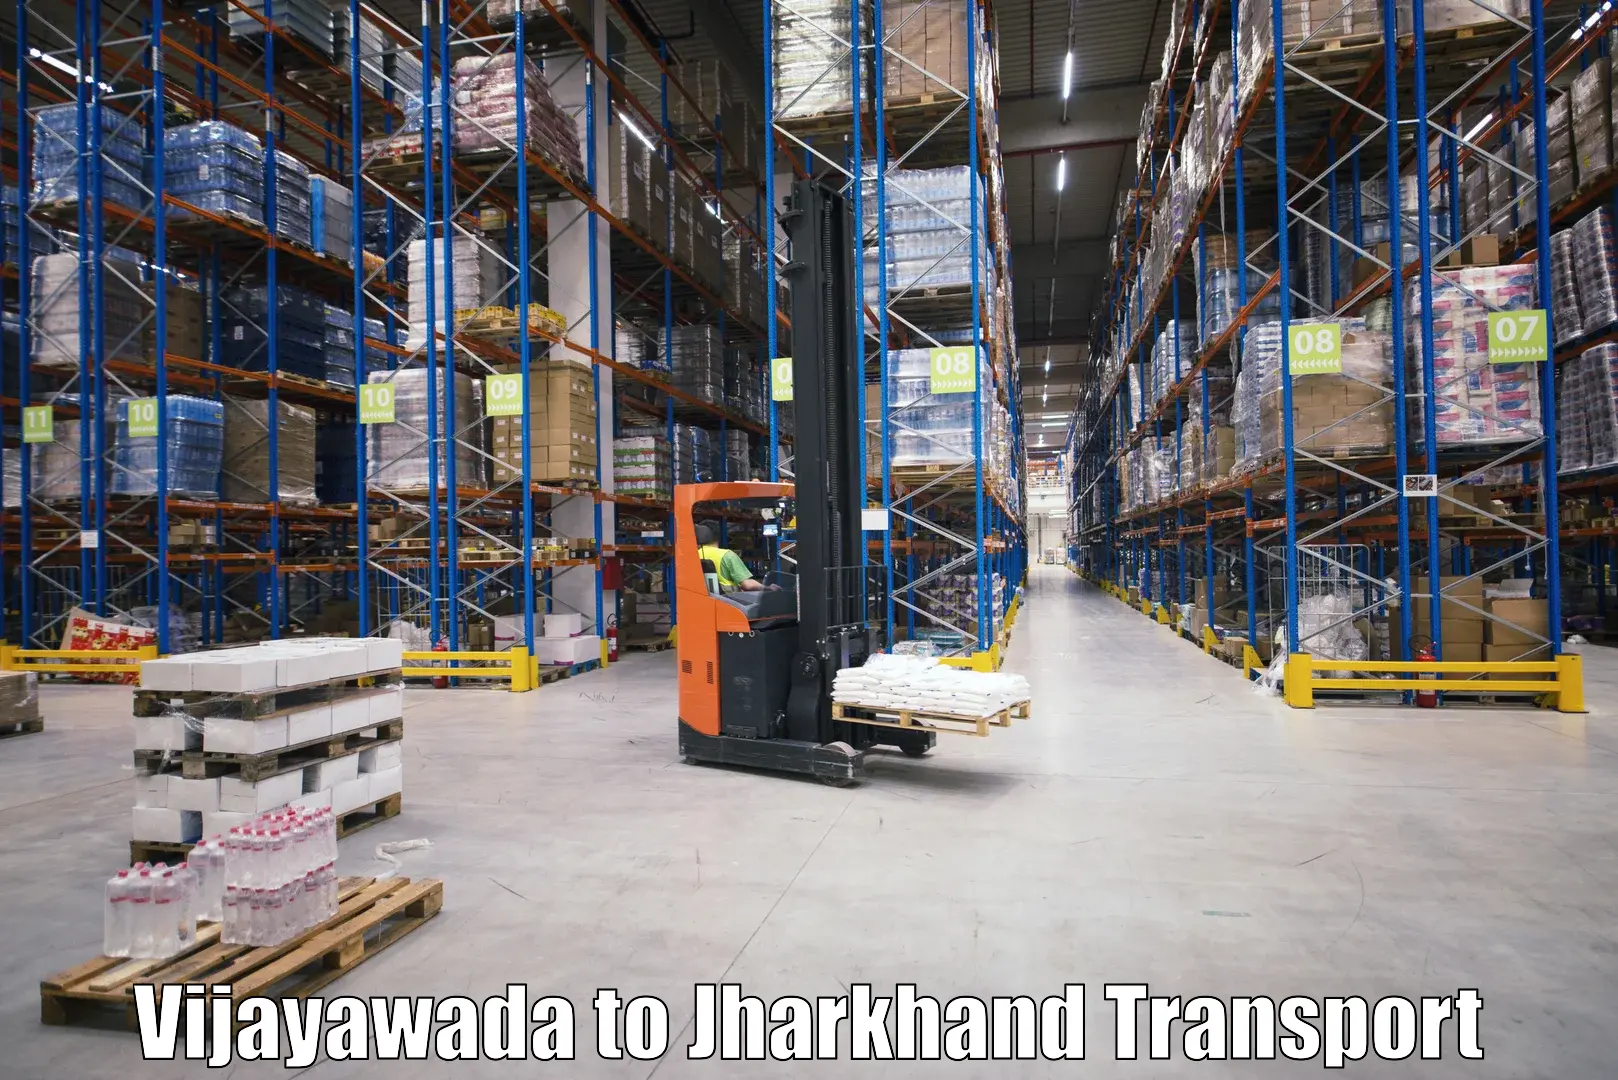 Road transport online services Vijayawada to Medininagar